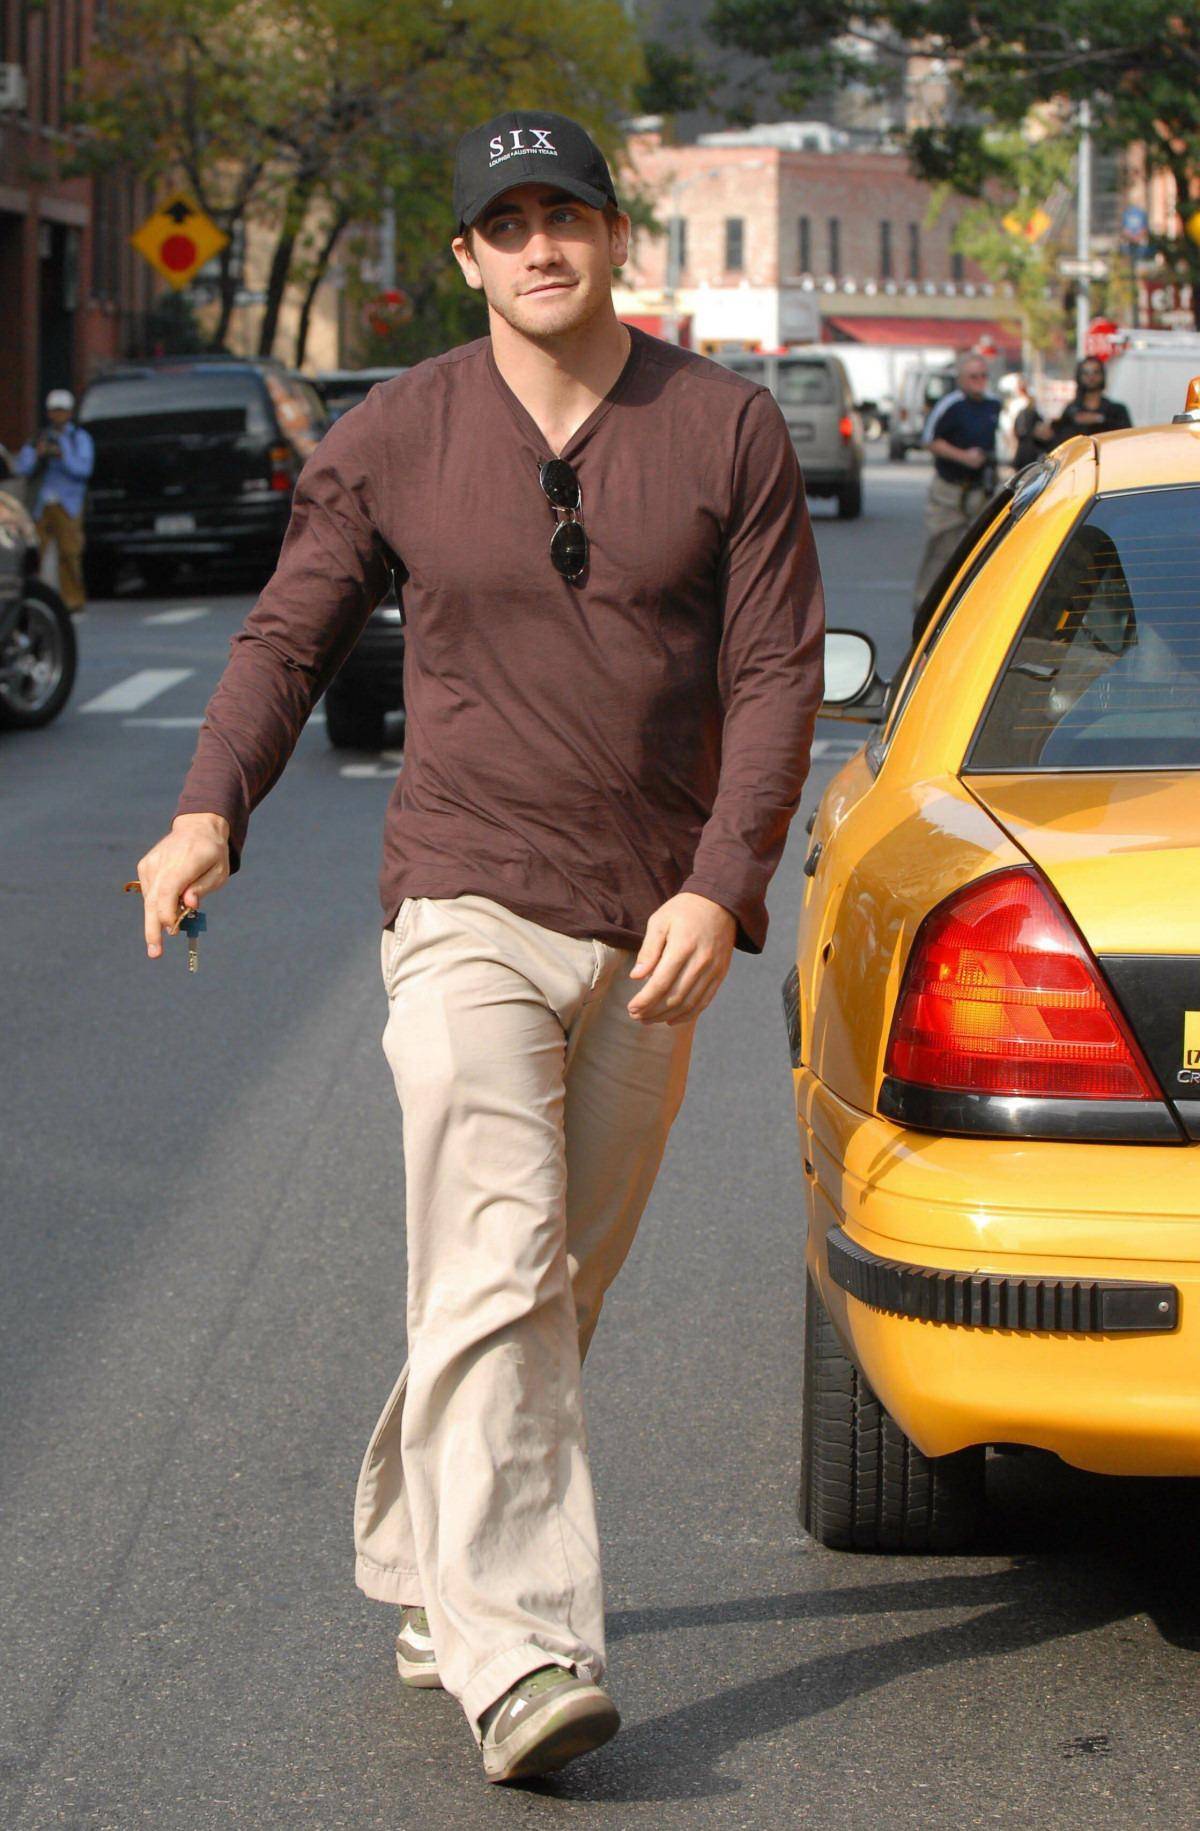 General photo of Jake Gyllenhaal